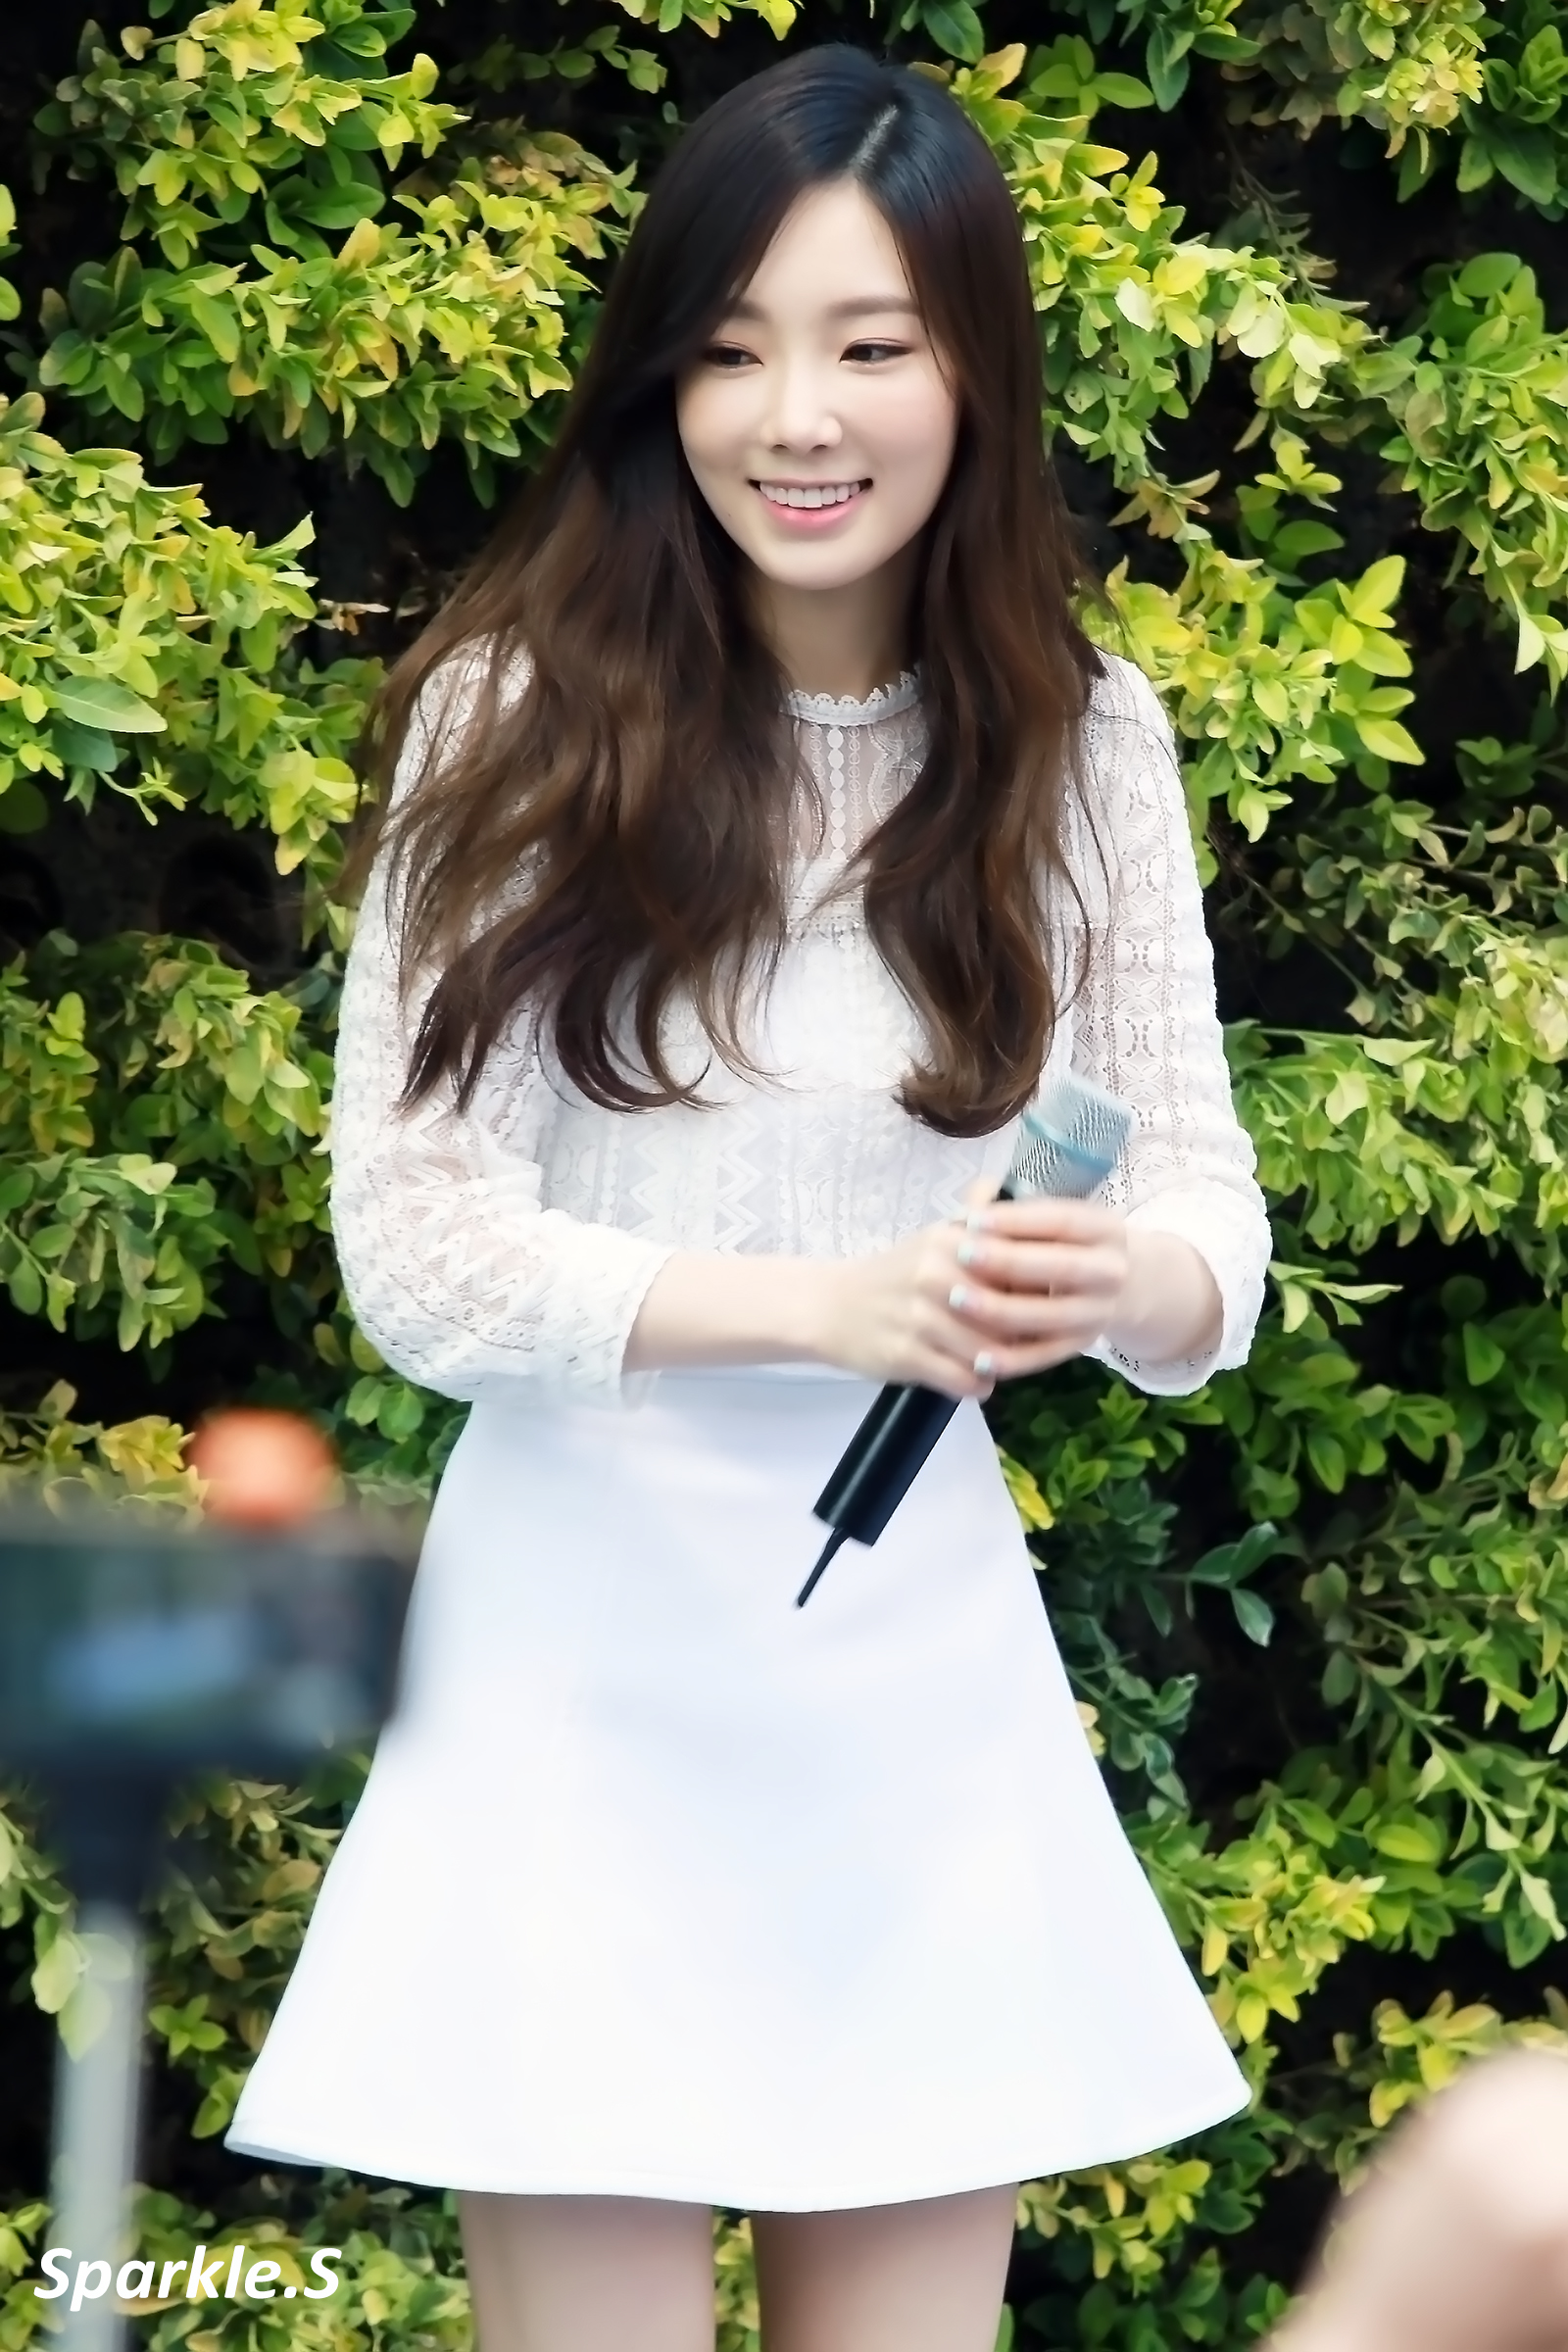 [PIC][23-04-2015]TaeYeon ghé thăm cửa hàng mỹ phẩm "NATURE REPUBLIC" ở Myeongdong vào trưa nay - Page 3 22335B345550CF782D160F